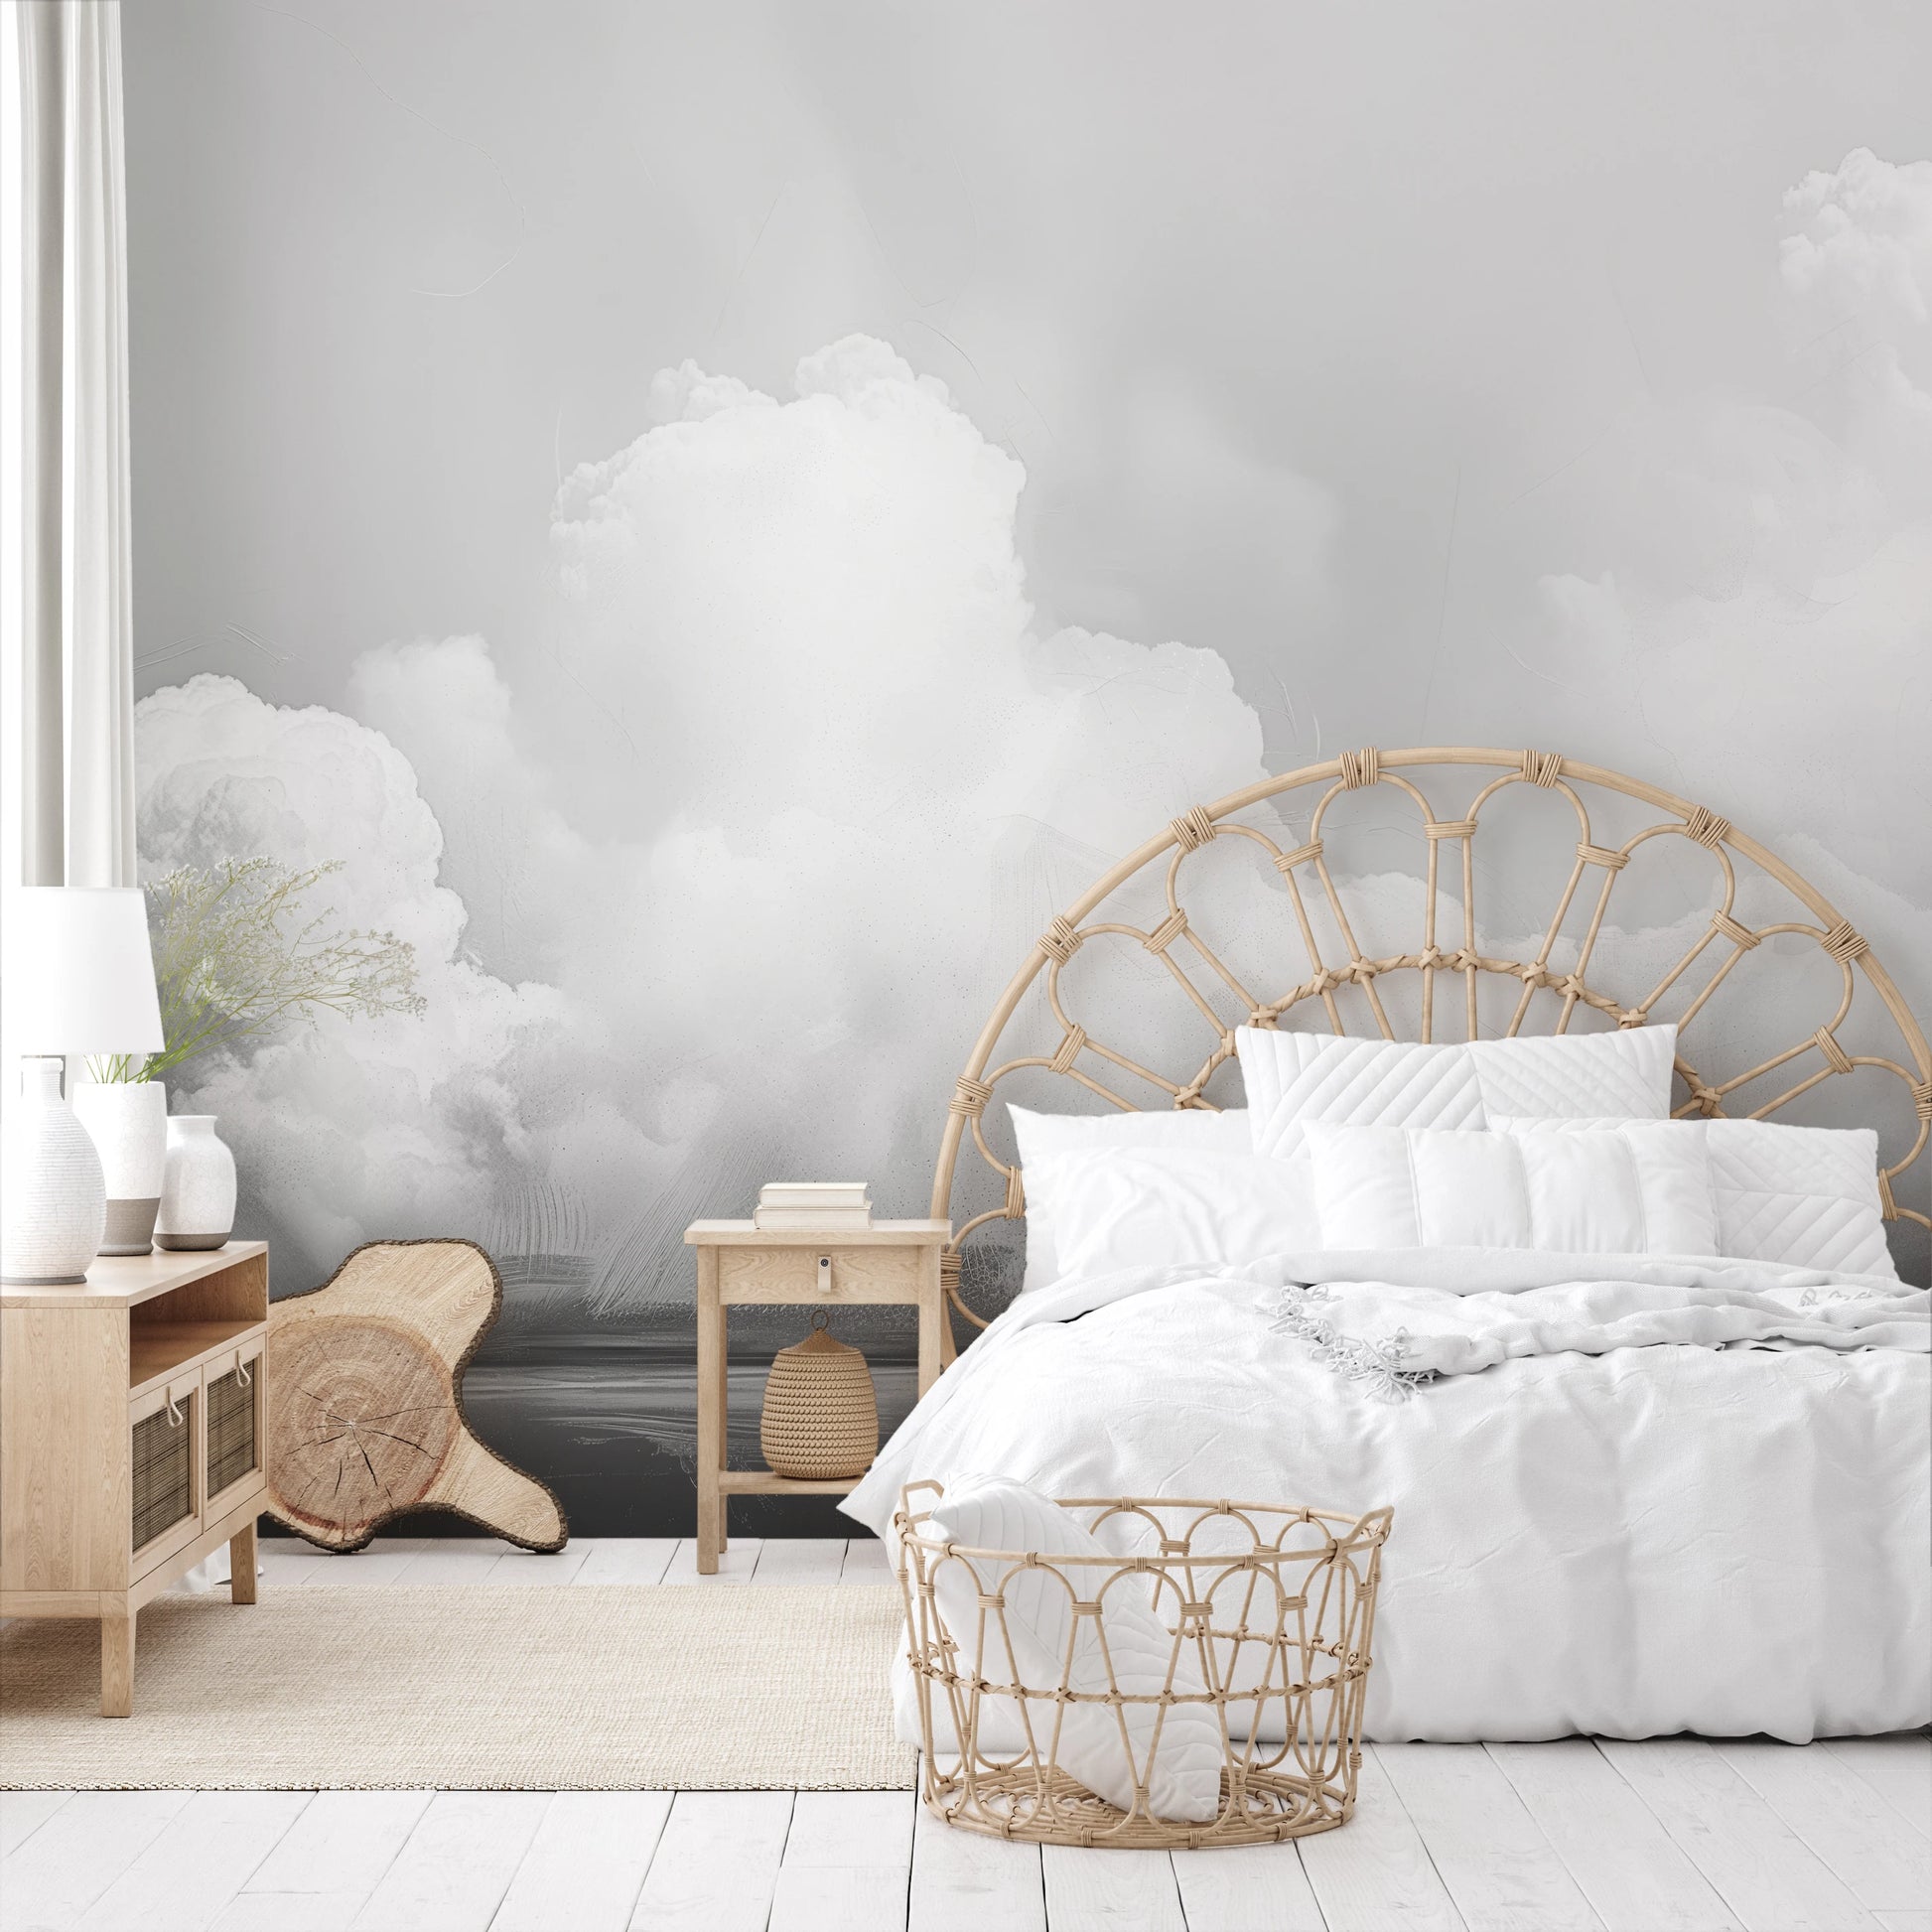 Wzór fototapety o nazwie Clouds of Tranquility pokazanej w kontekście pomieszczenia.